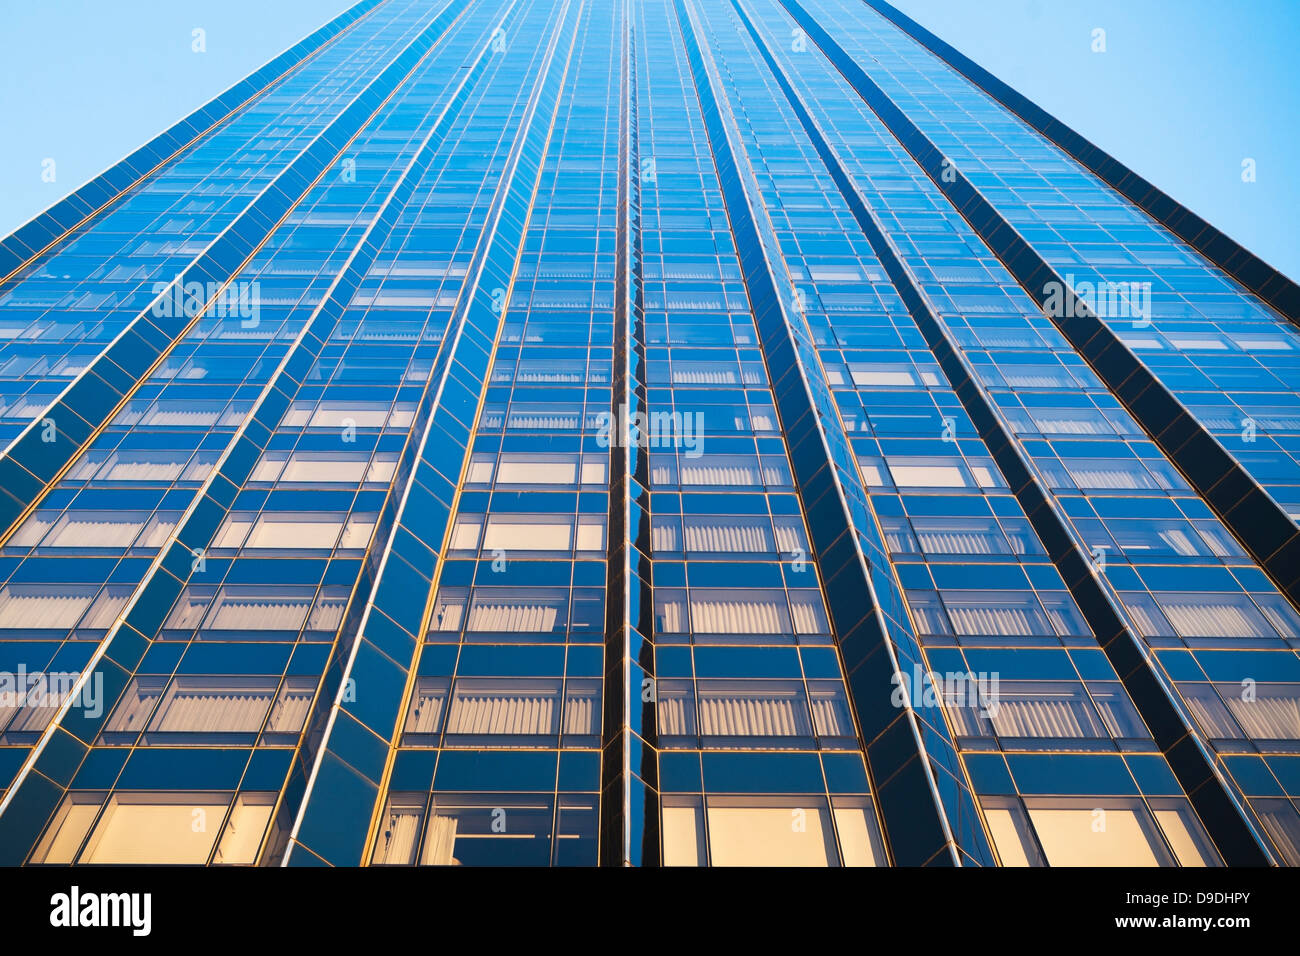 Vue oblique de gratte-ciel, New York City, USA Banque D'Images